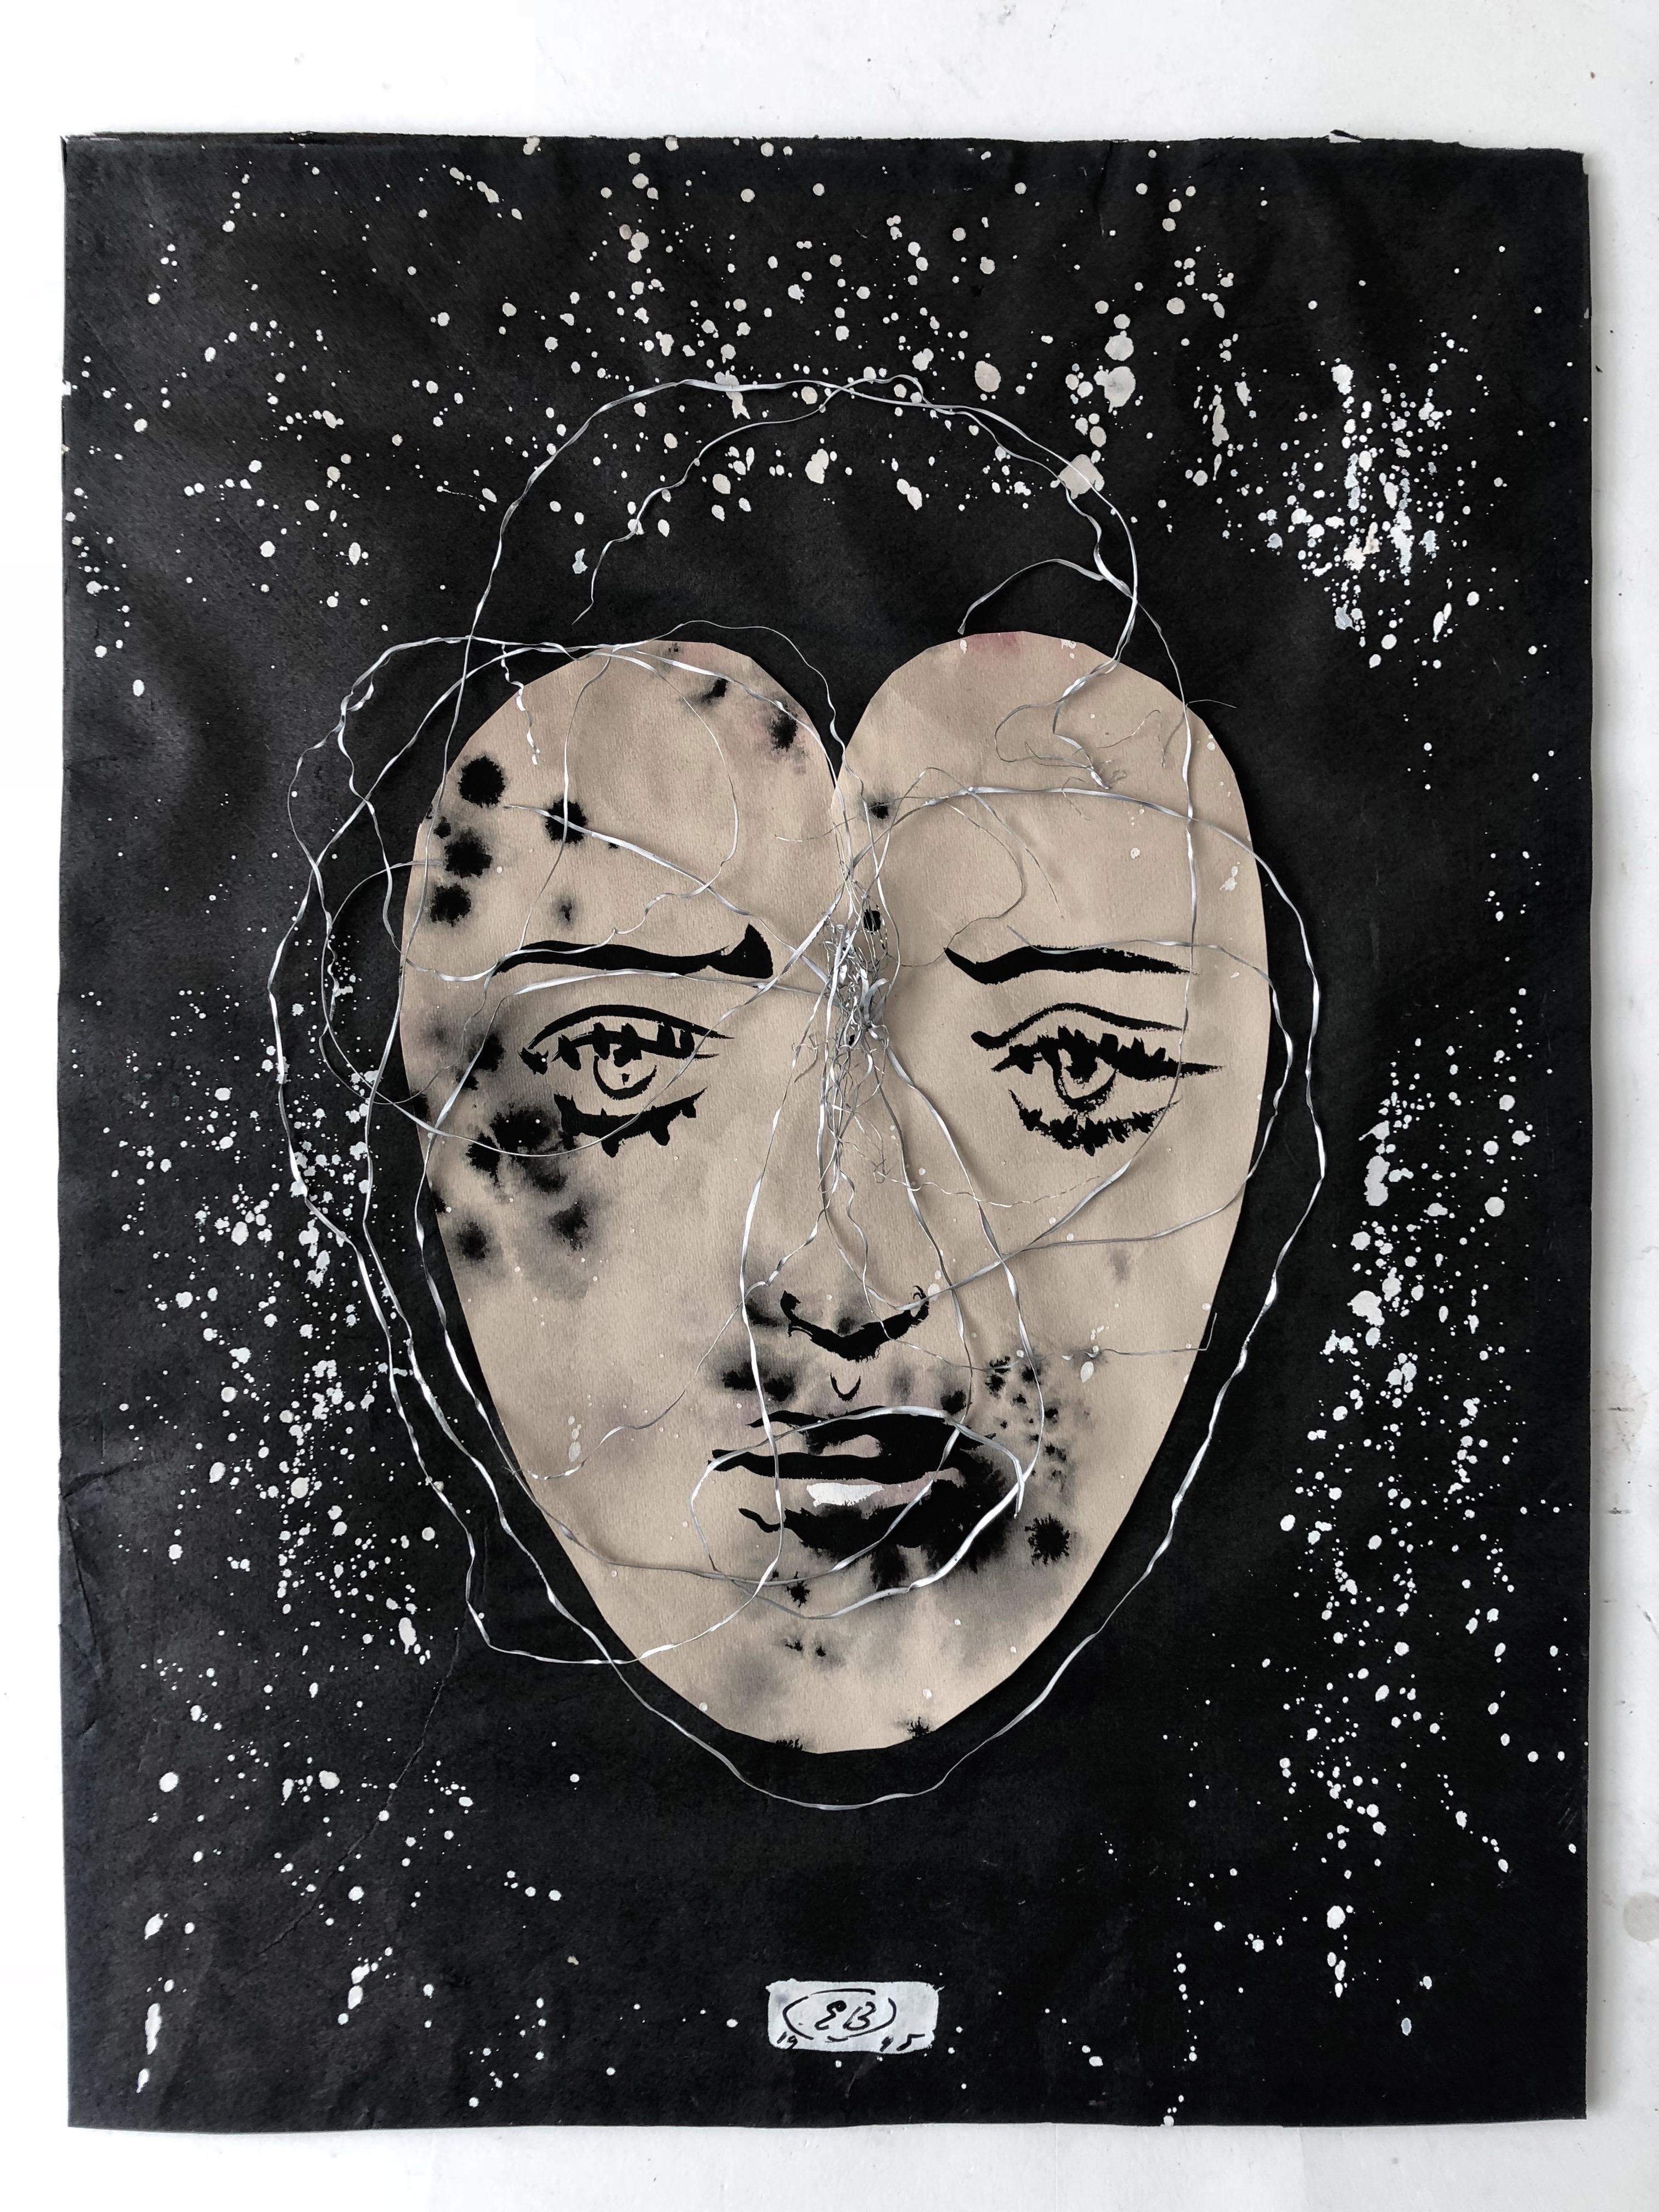 Dieses eindringliche Bild von Eugene Berman wurde auf ein in Form eines Herzens geschnittenes Blatt Papier gemalt, auf einen mit Farbe gesprenkelten Untergrund aufgezogen, mit Metallspänen umrandet und in einen vom Künstler selbst entworfenen Rahmen